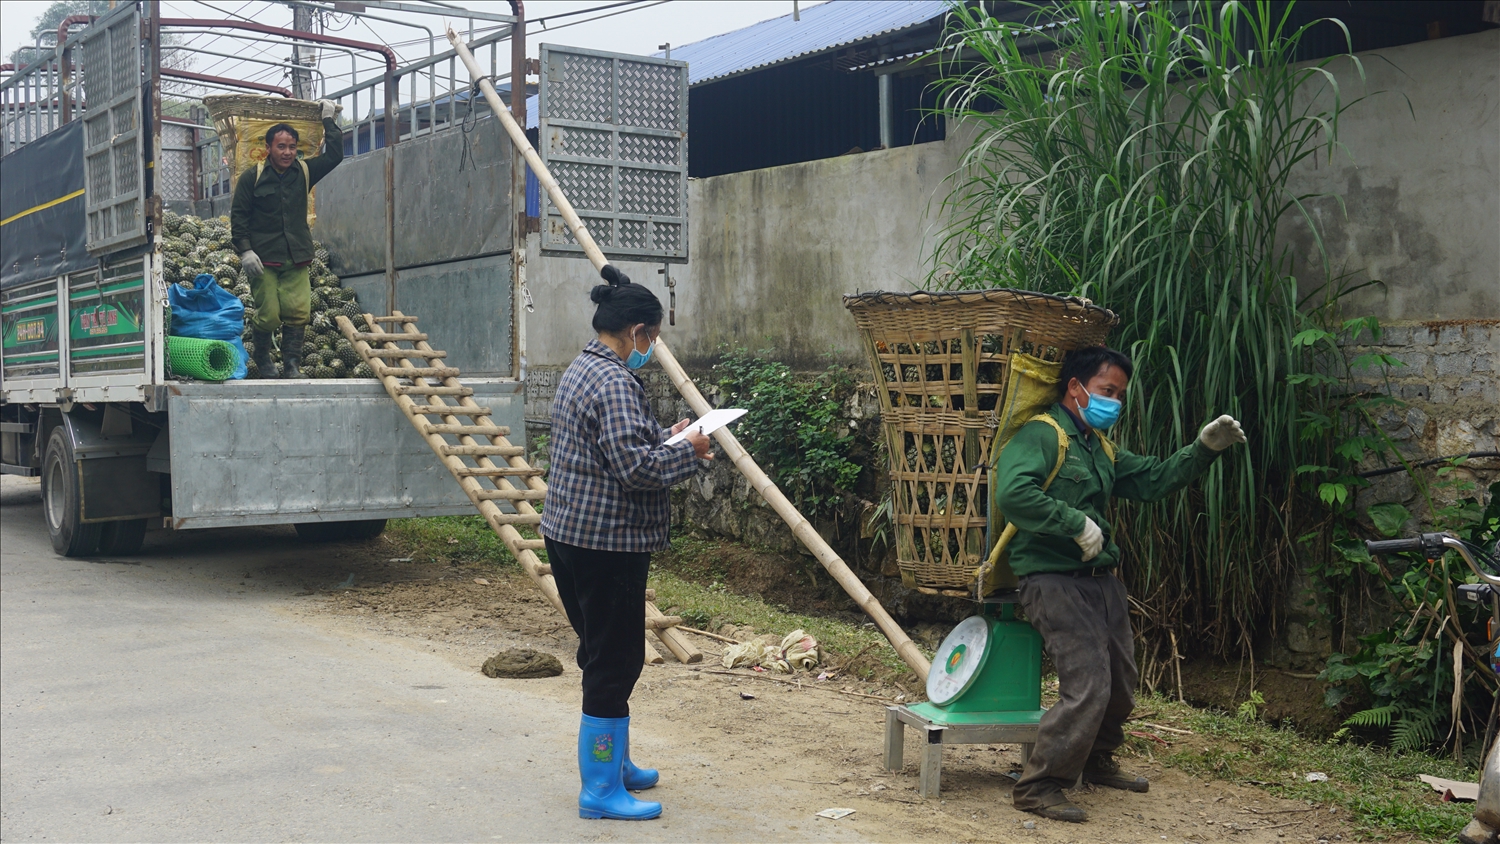 Cùng với việc bán lẻ dứa quả ra thị trường trong và ngoài tỉnh hiện nay tỉnh Lào Cai đang nỗ lực tìm kiếm các thị trường, siêu thị lớn bảo đảm đầu ra ổn định bền vững cho bà con nông dân